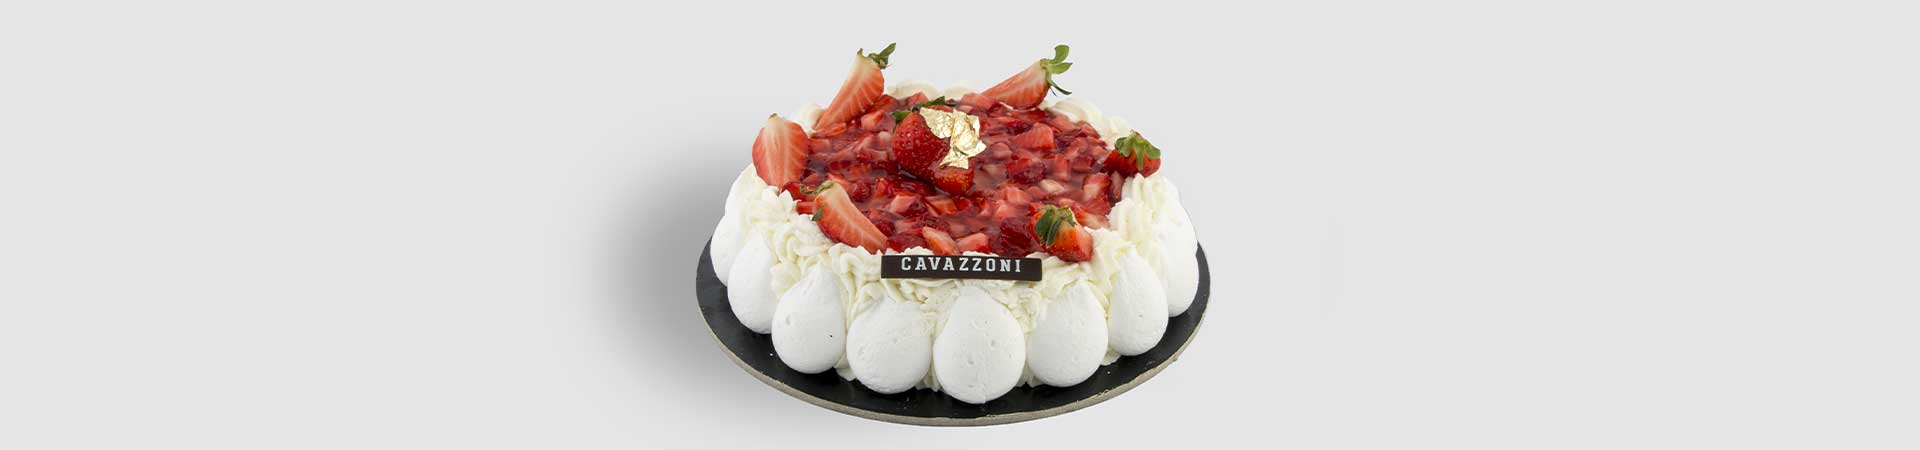 Torta Fragolosa - Pasticceria Cavazzoni Fano